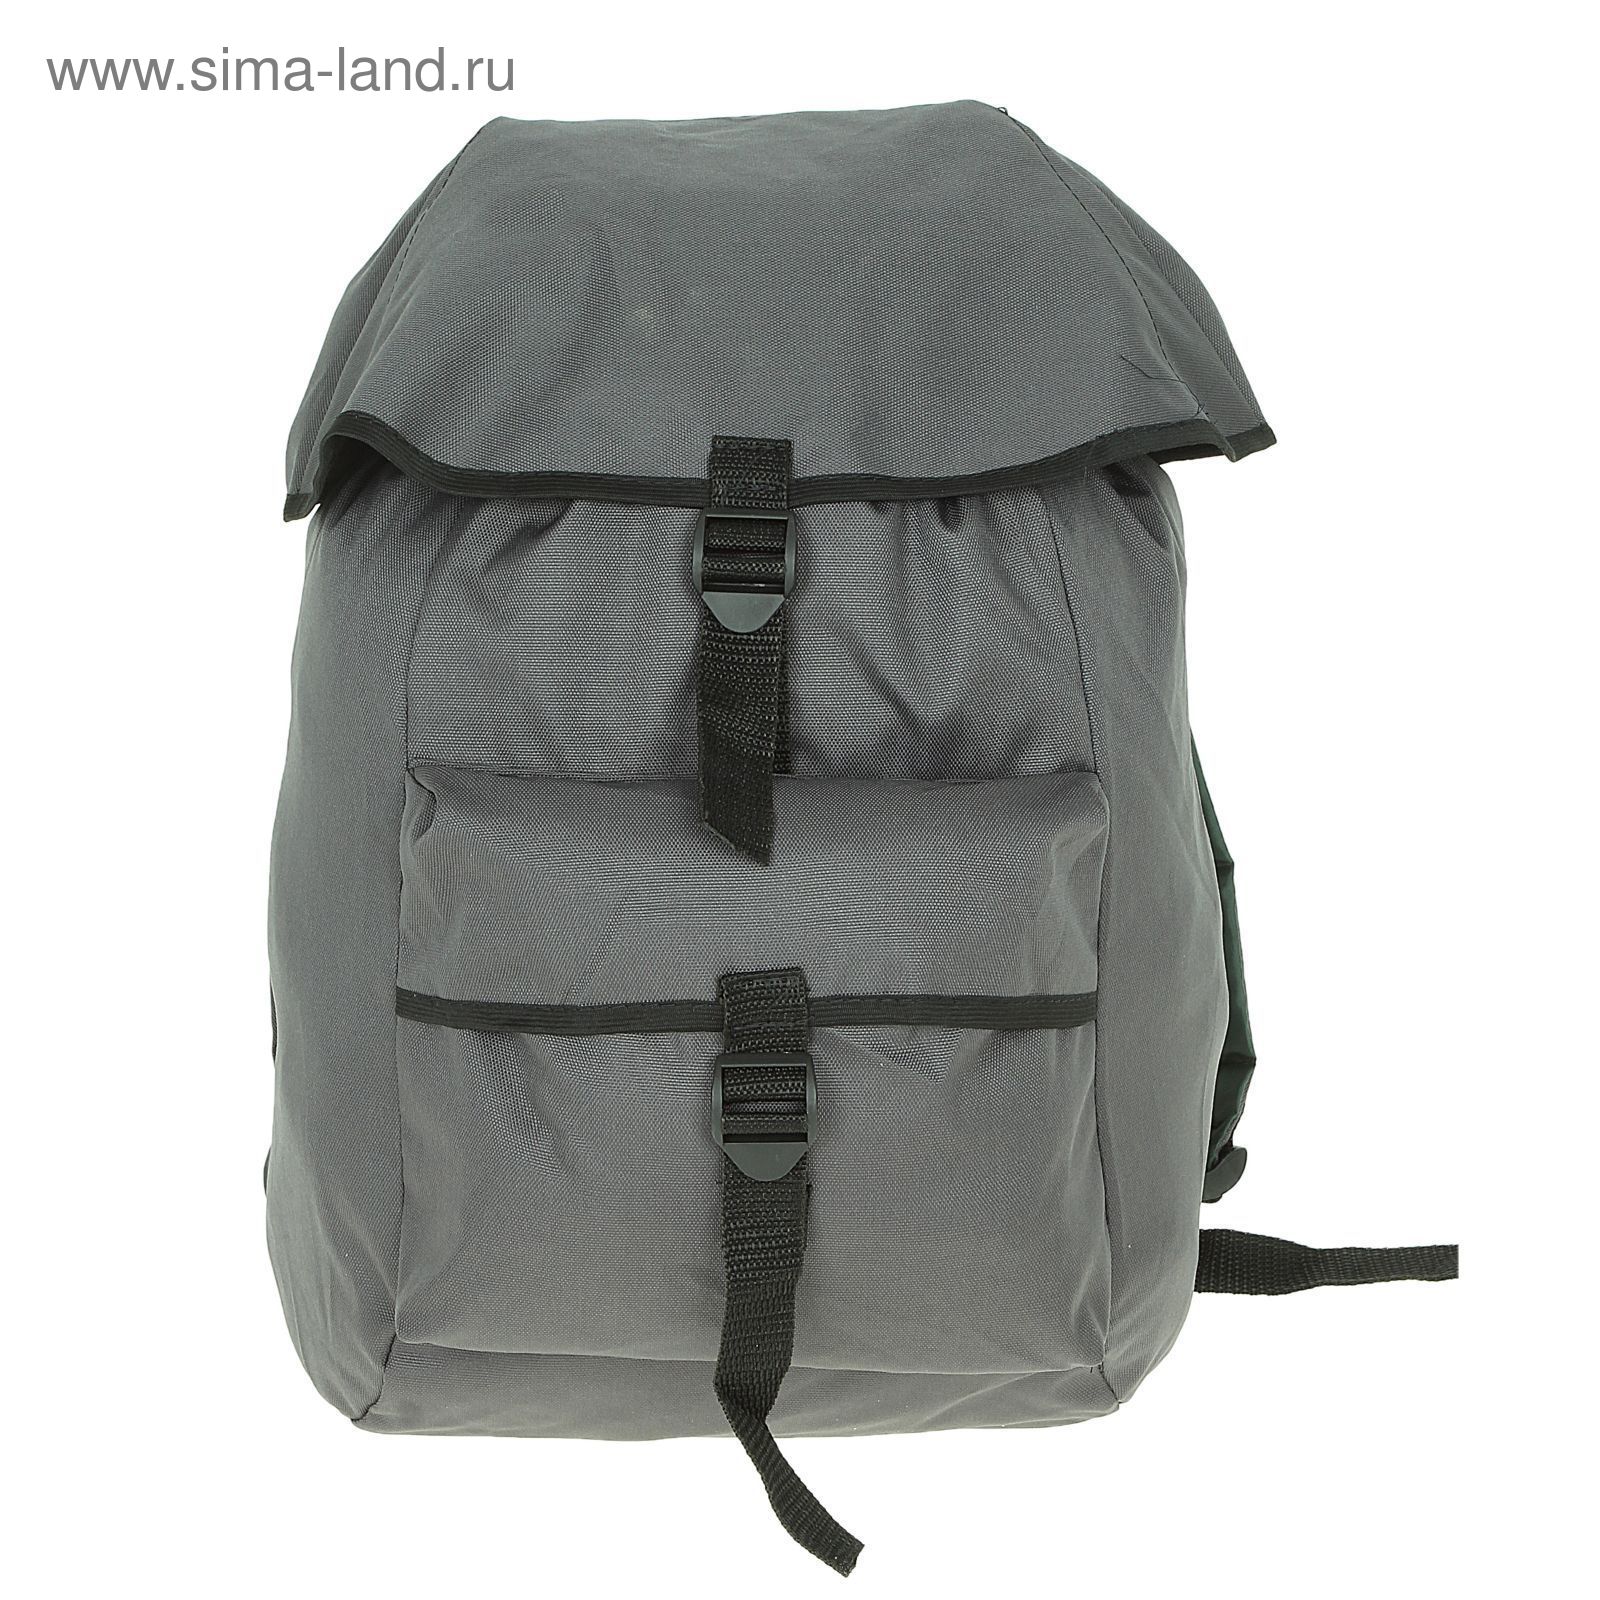 Рюкзак Тип-16, 20 л, цвета МИКС